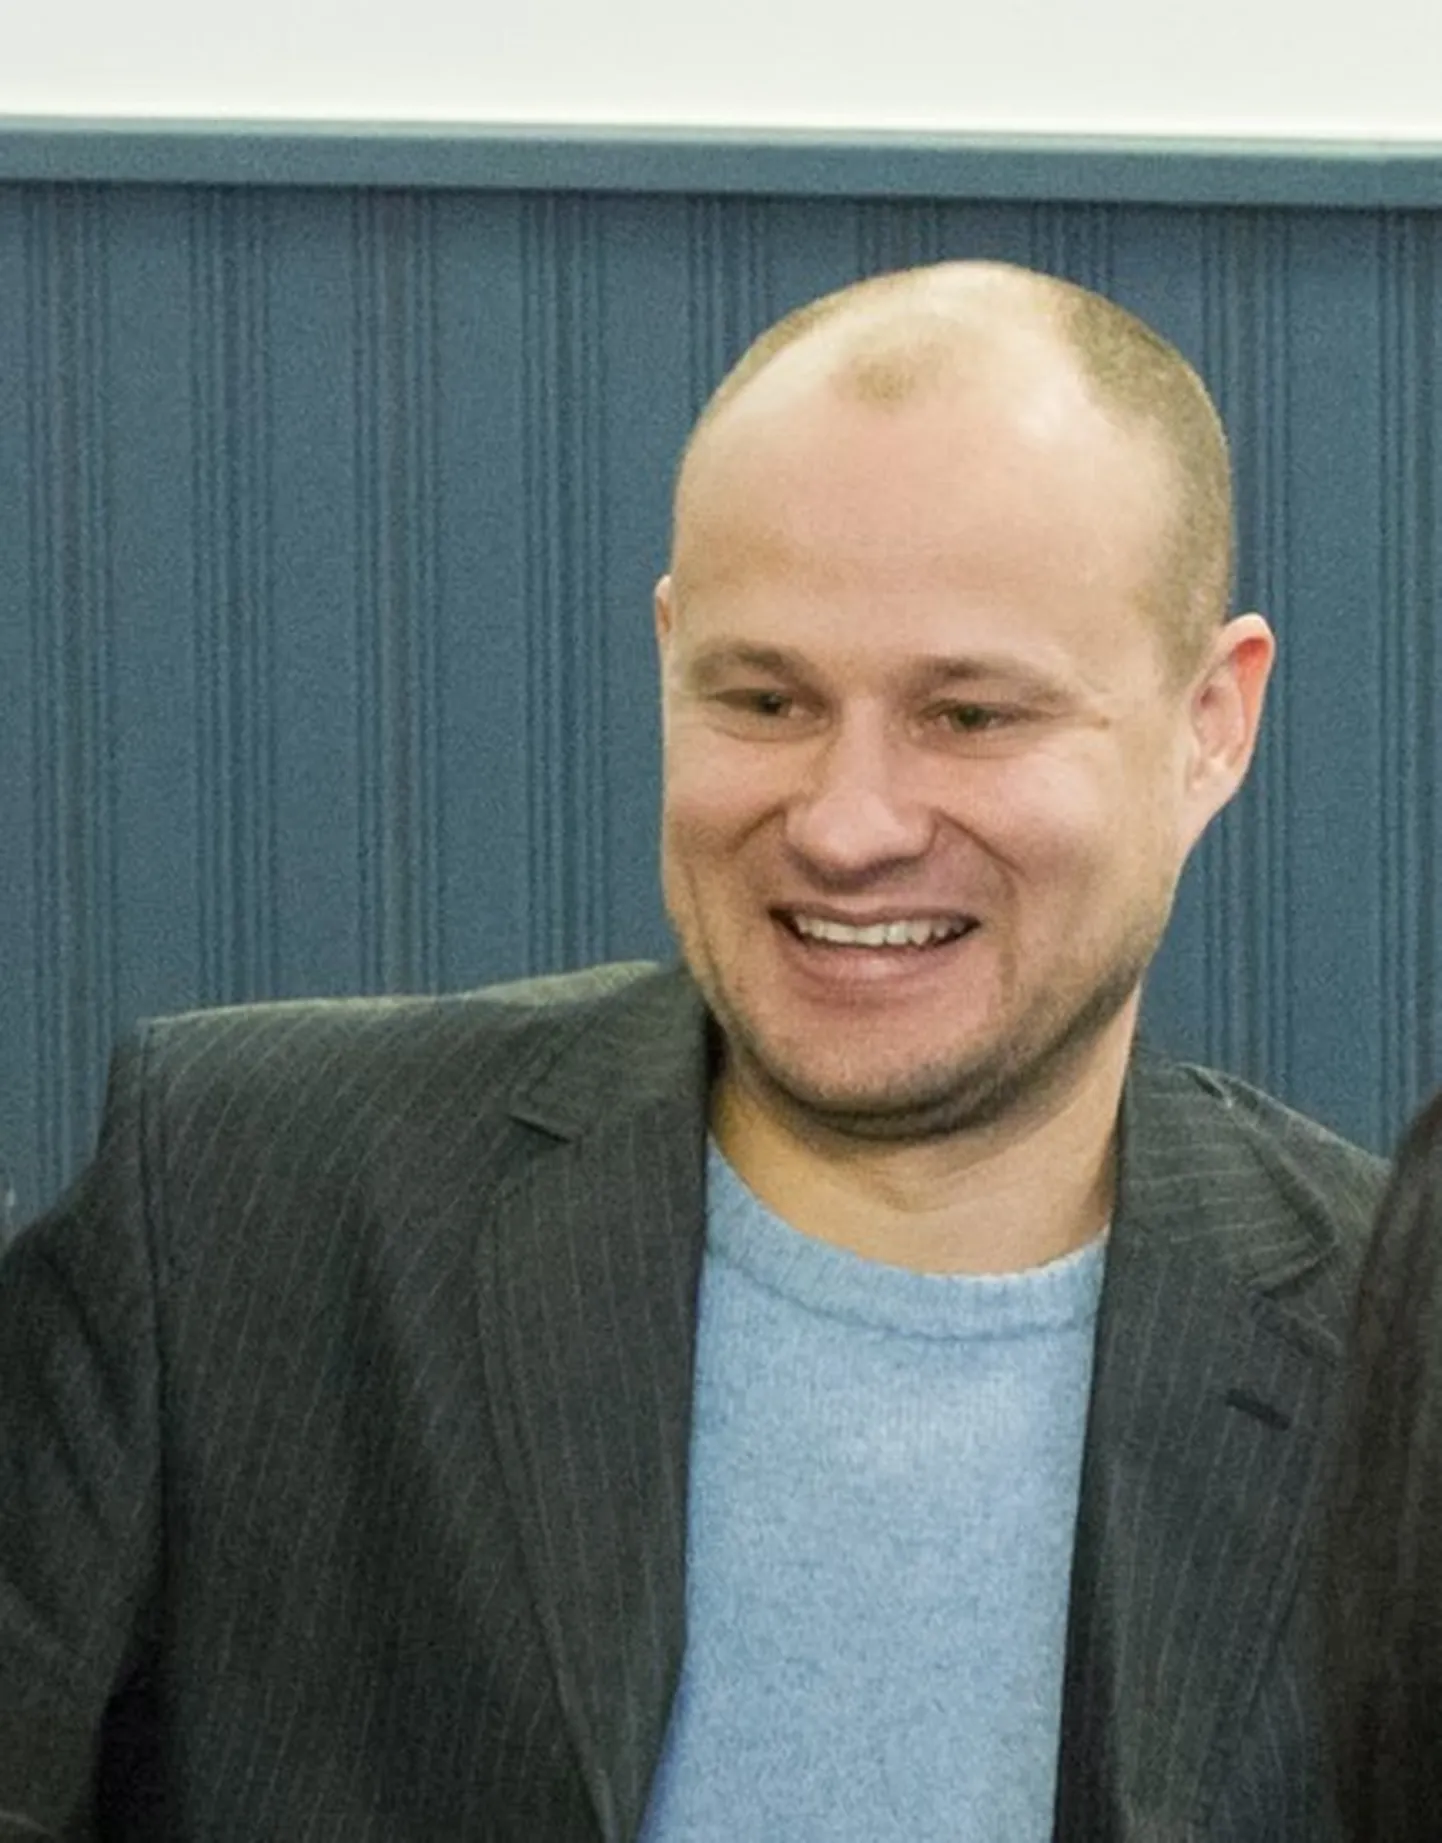 Linnavalitsus nimetas munitsipaalettevõtte OSK Grupp nõukogu liikmeks Jevgeni Saltõkovi, kes kannab praegu karistust kelmuse ja võltsimise eest.